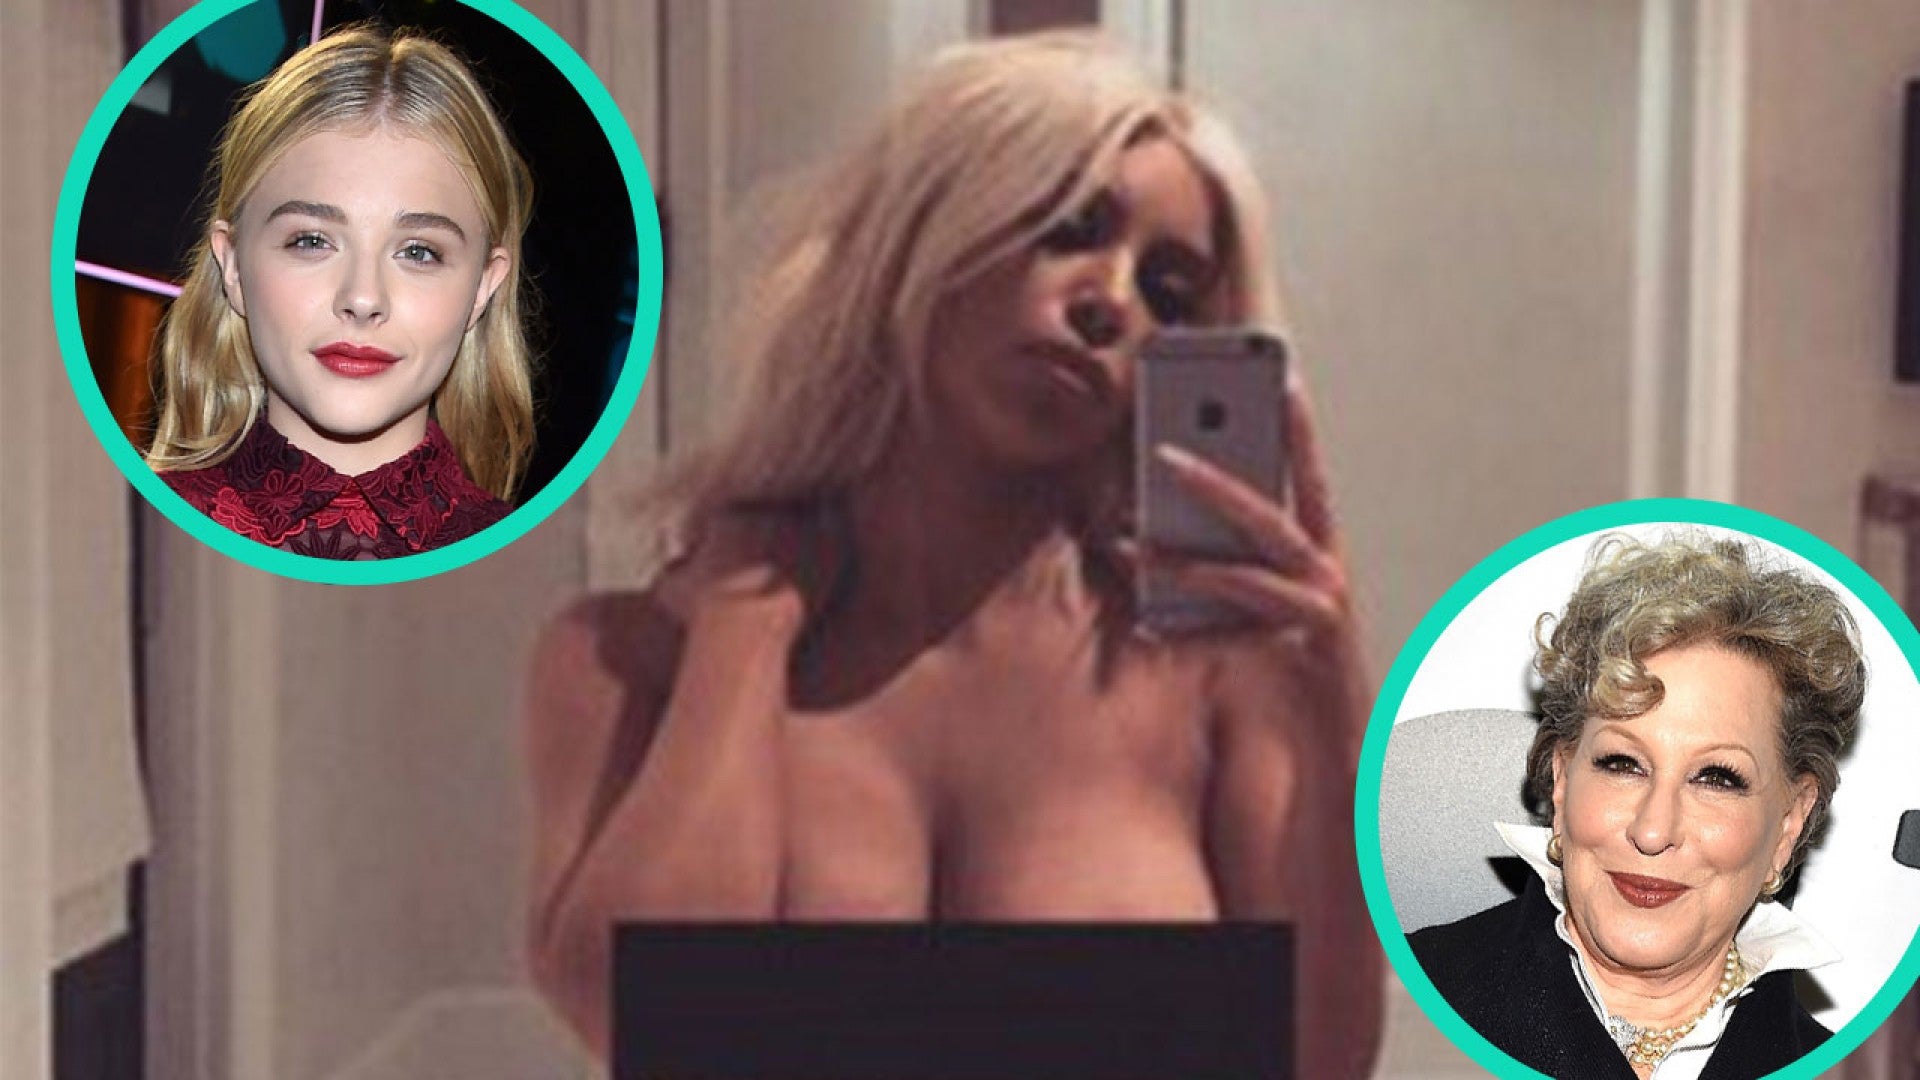 Chloe Moretz Porn You - Bette Midler and Chloe Grace Moretz Slam Kim Kardashian for Nude Selfie |  Entertainment Tonight